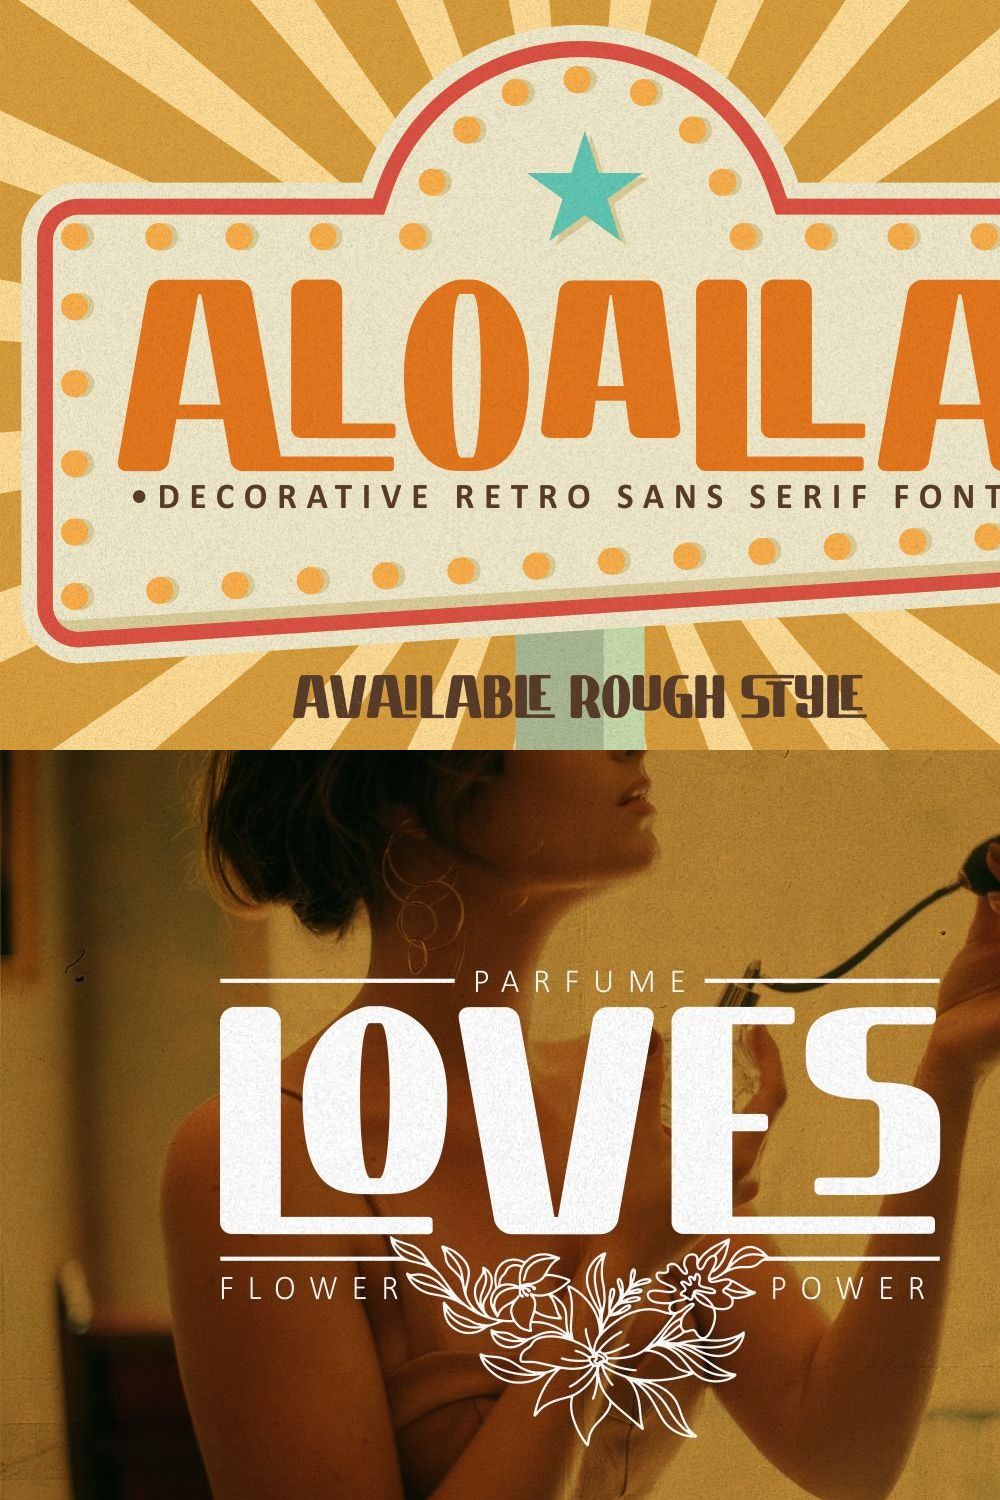 Aloalla - Decorative Retro Sans pinterest preview image.